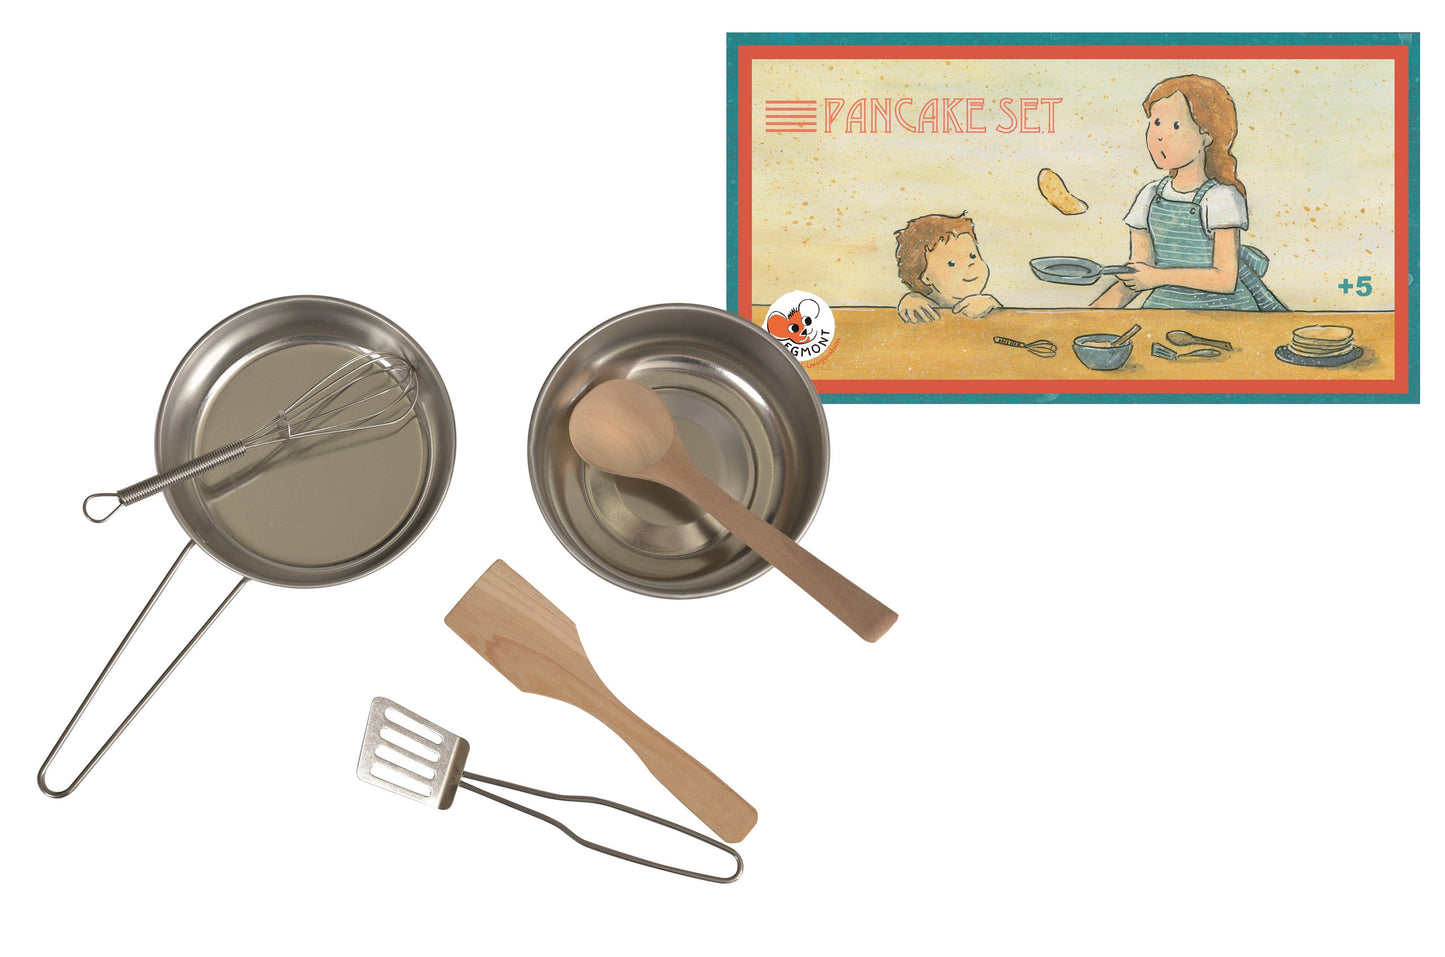 Pancake Set with Recipe - Einstein's Attic